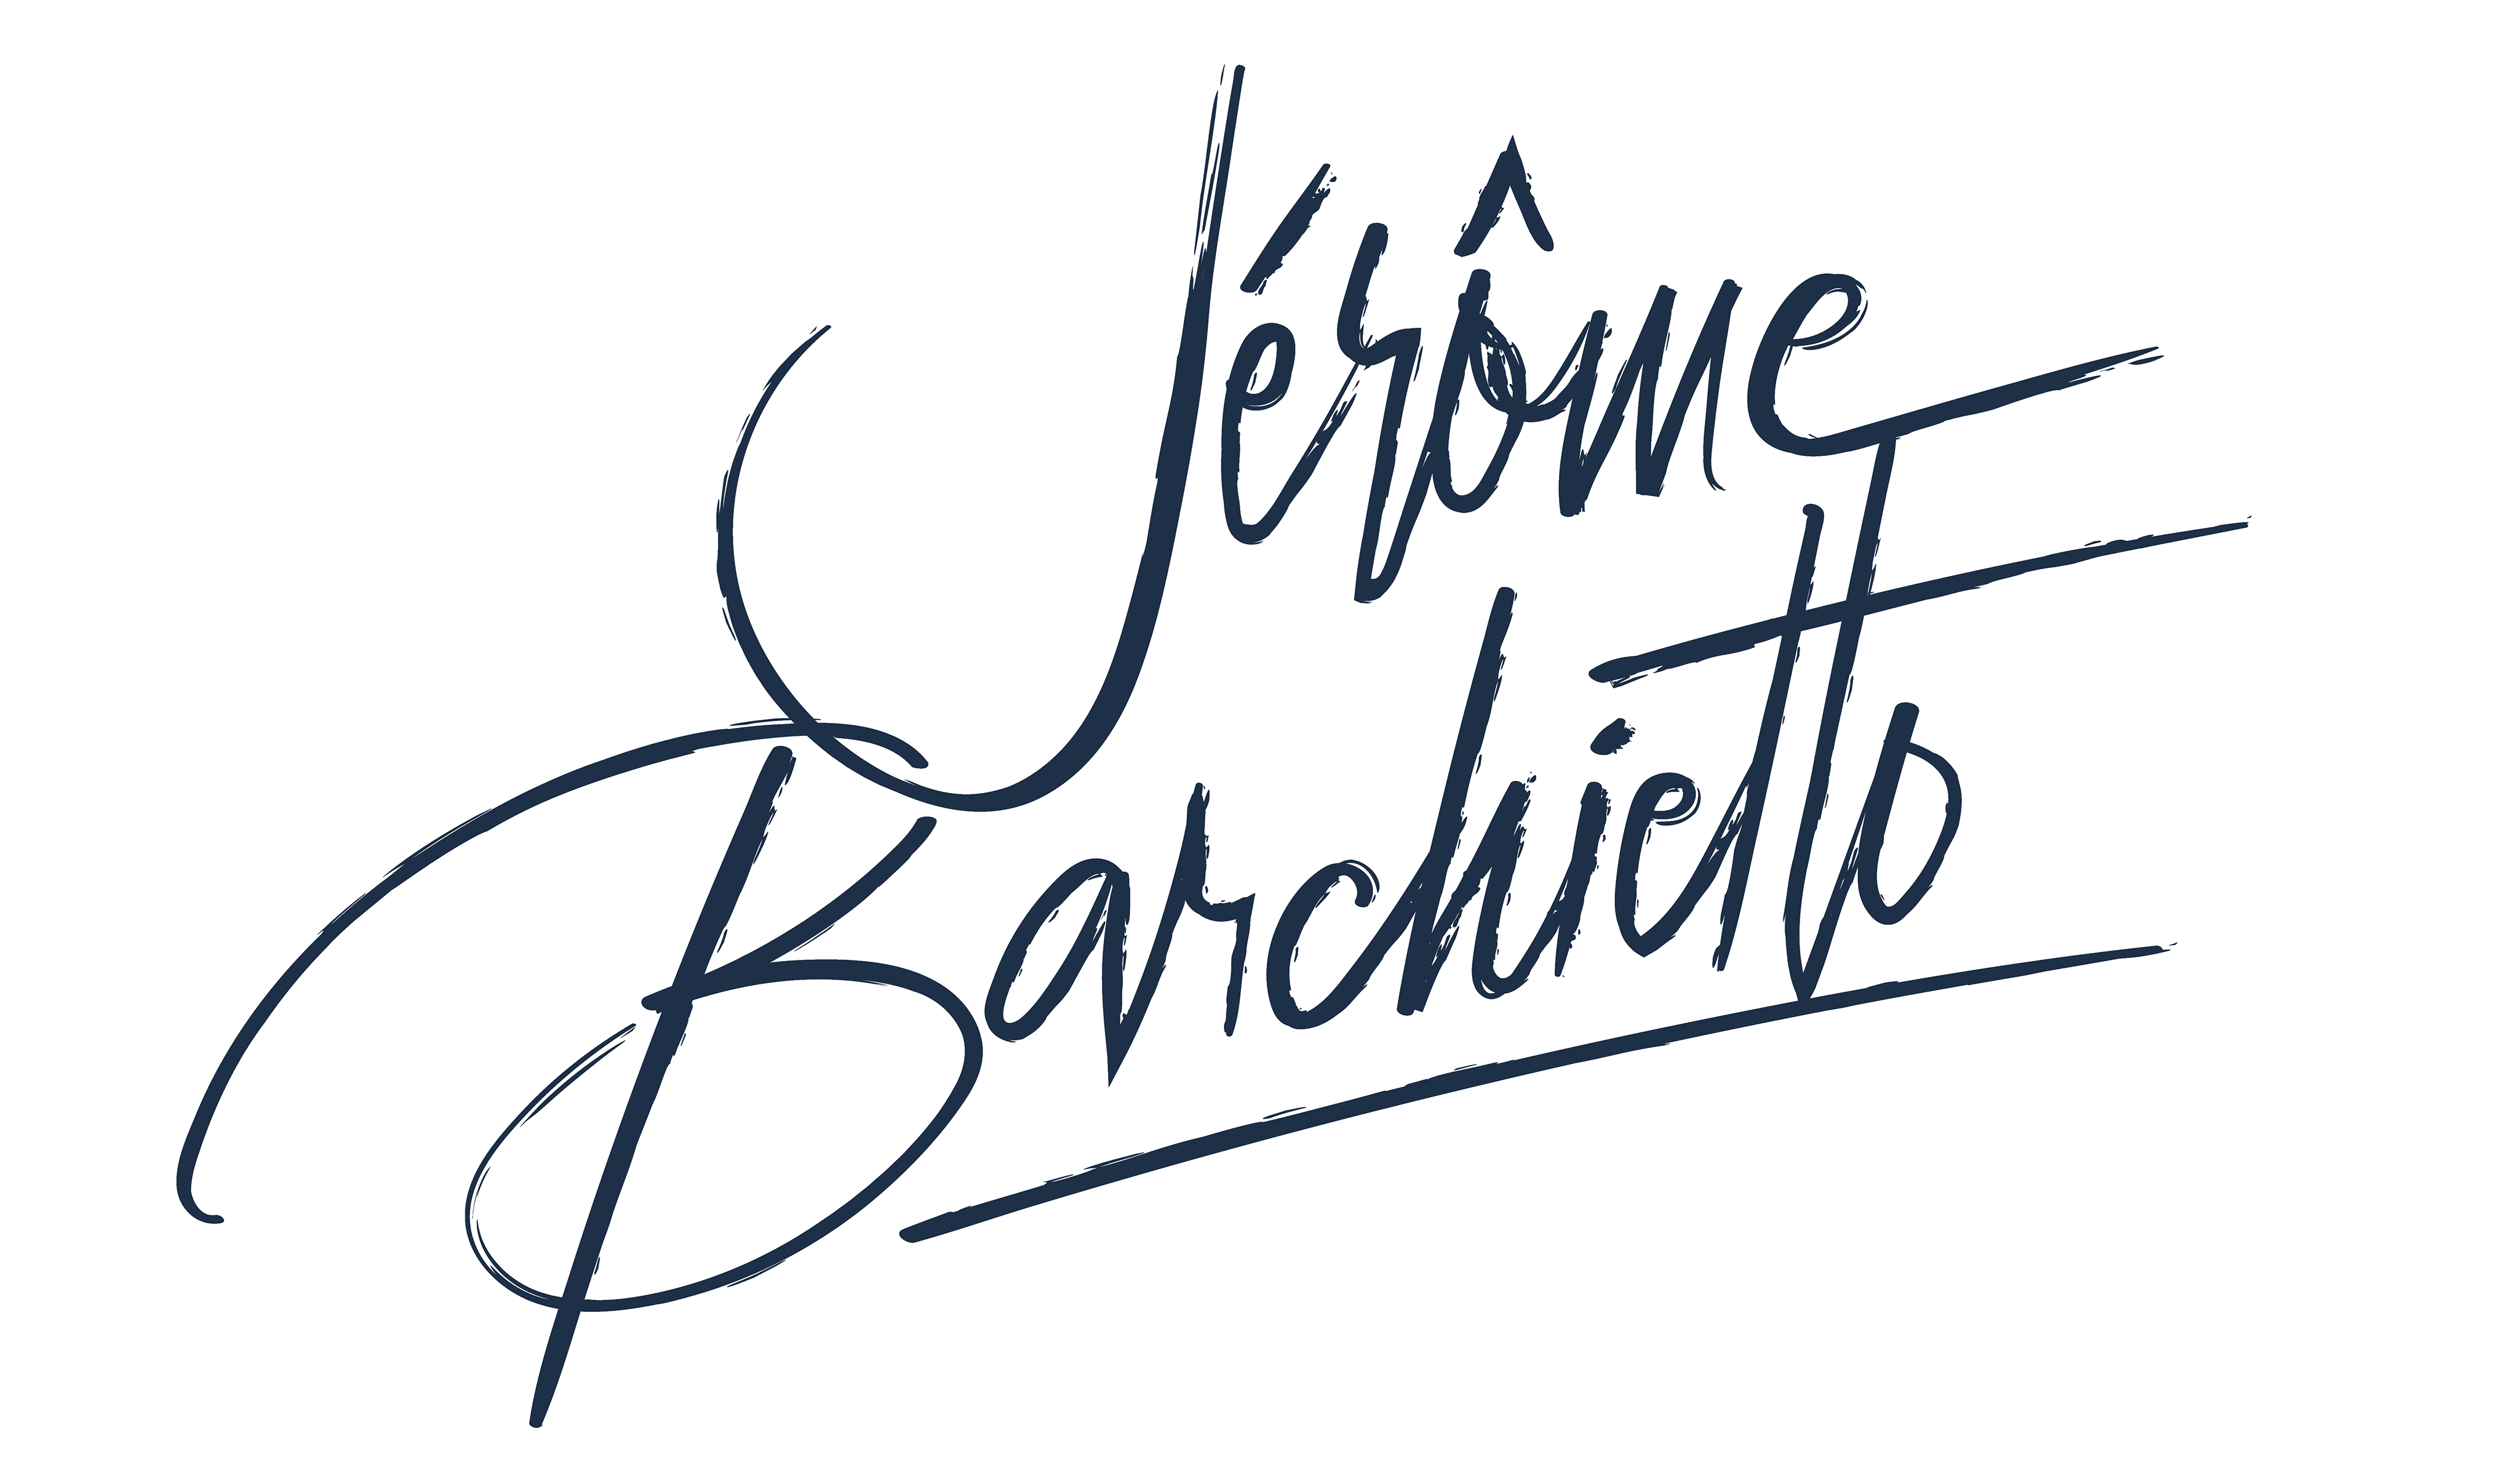 Jérôme Barchietto